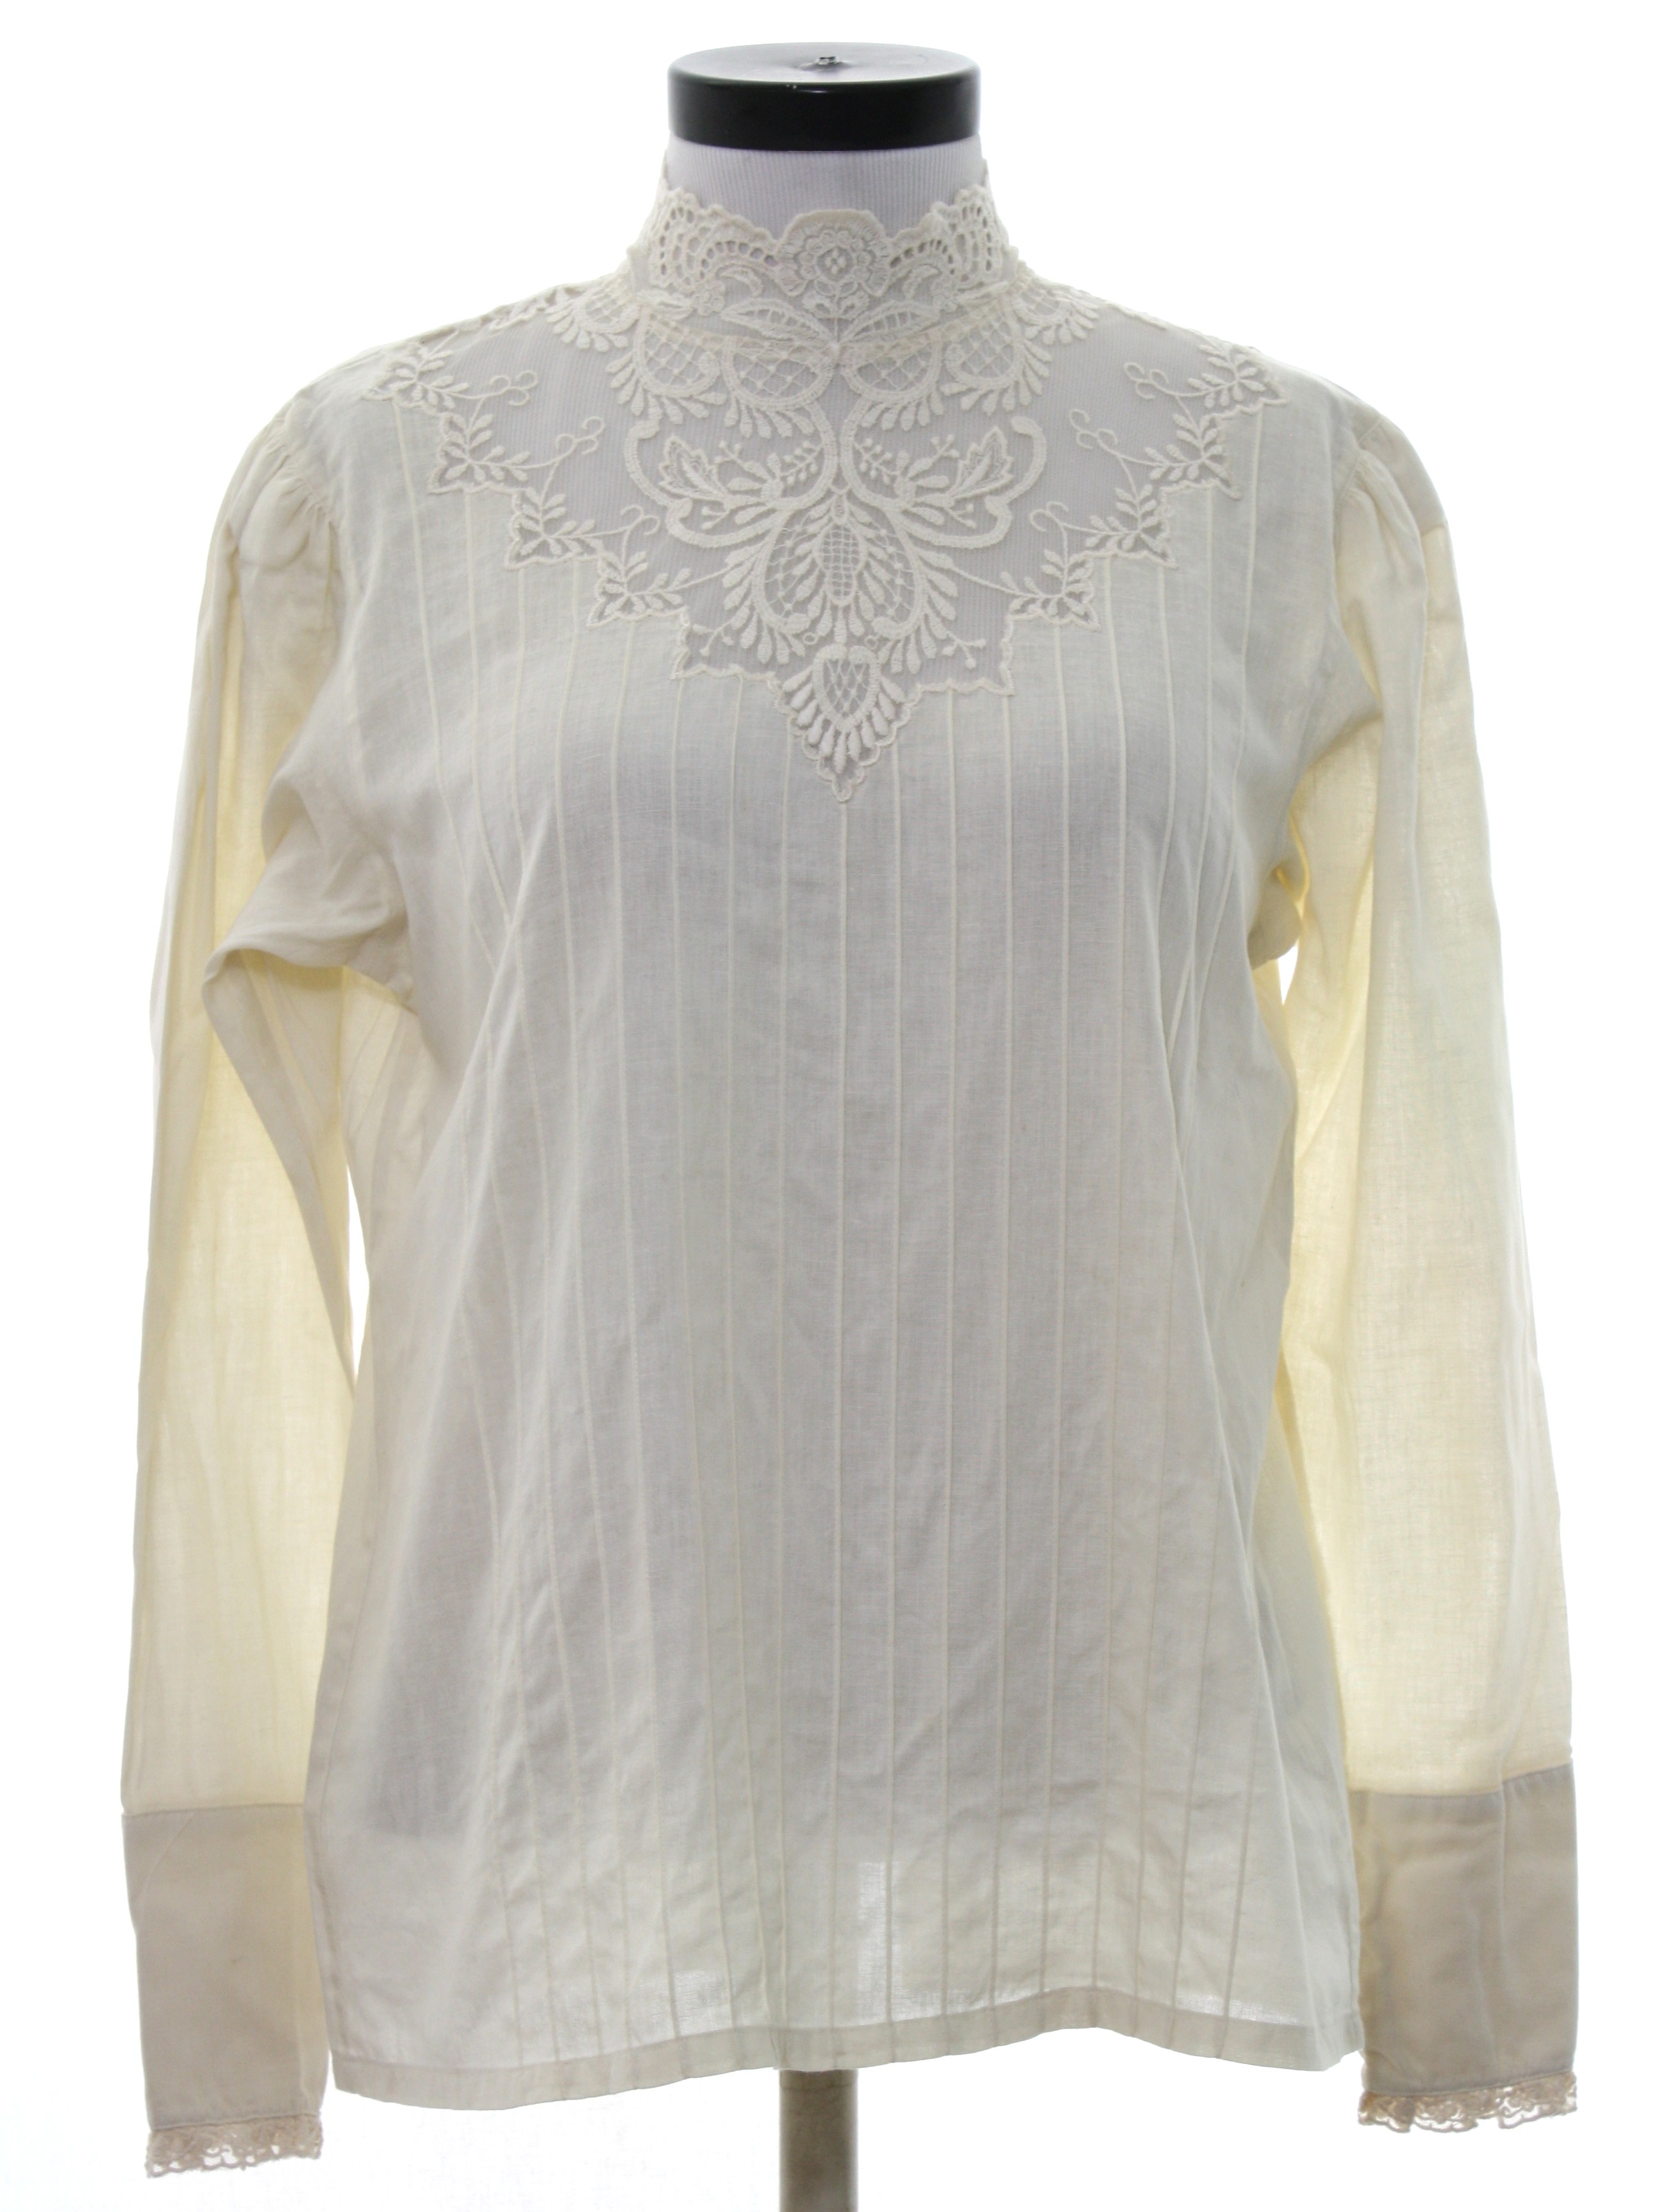 JG Hook Eighties Vintage Shirt: 80s -JG Hook- Womens natural white ...